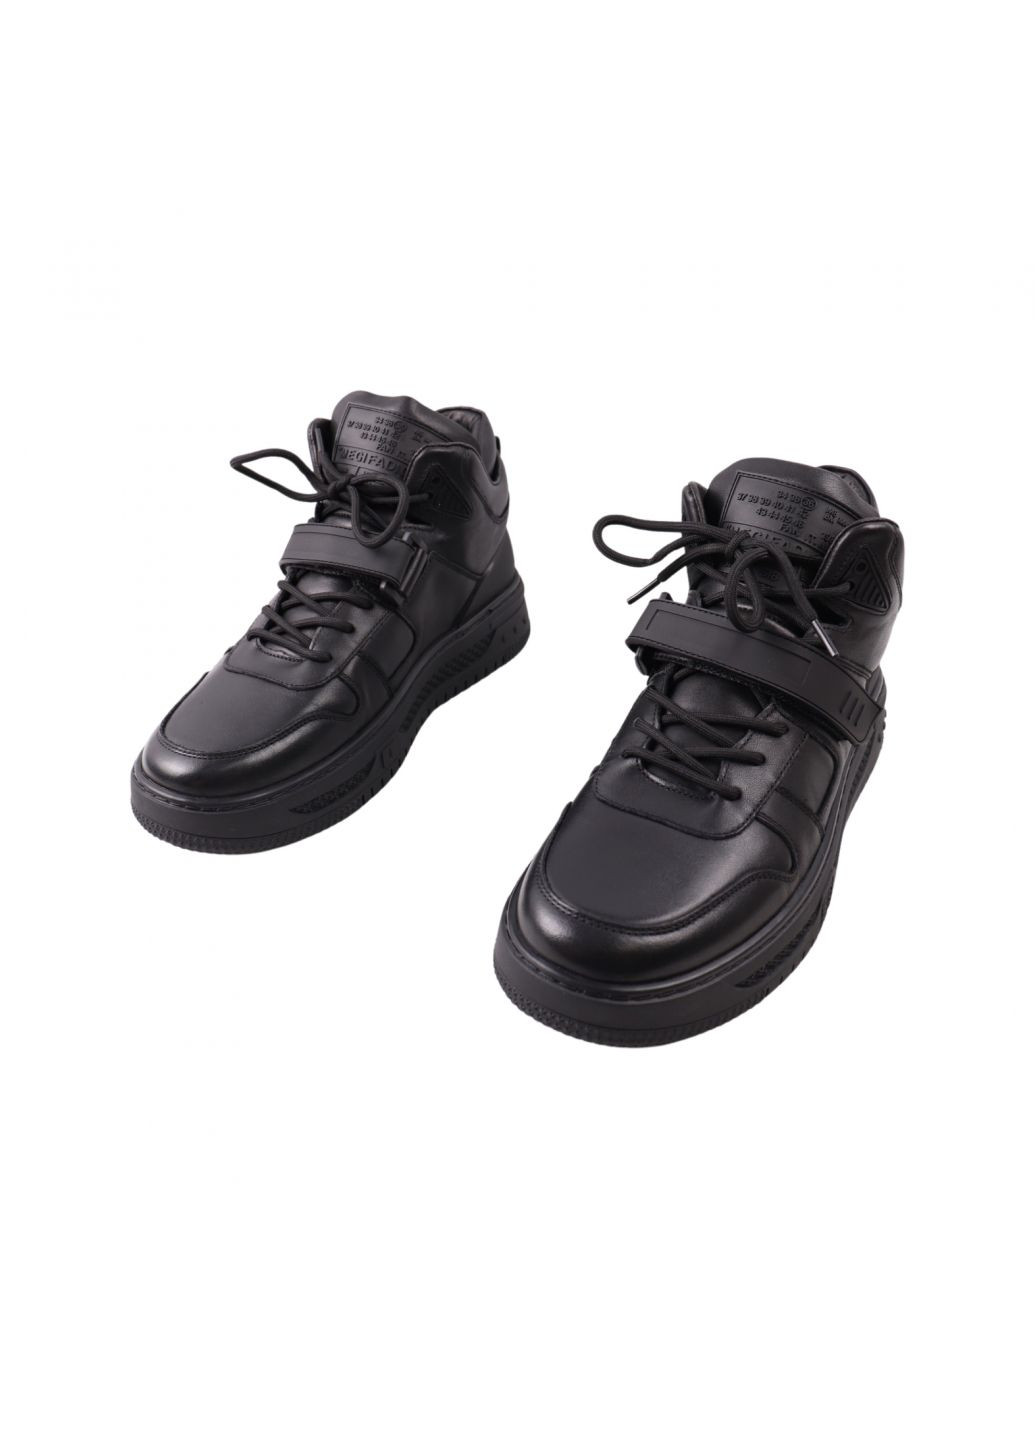 Черные ботинки мужские черные натуральная кожа Berisstini